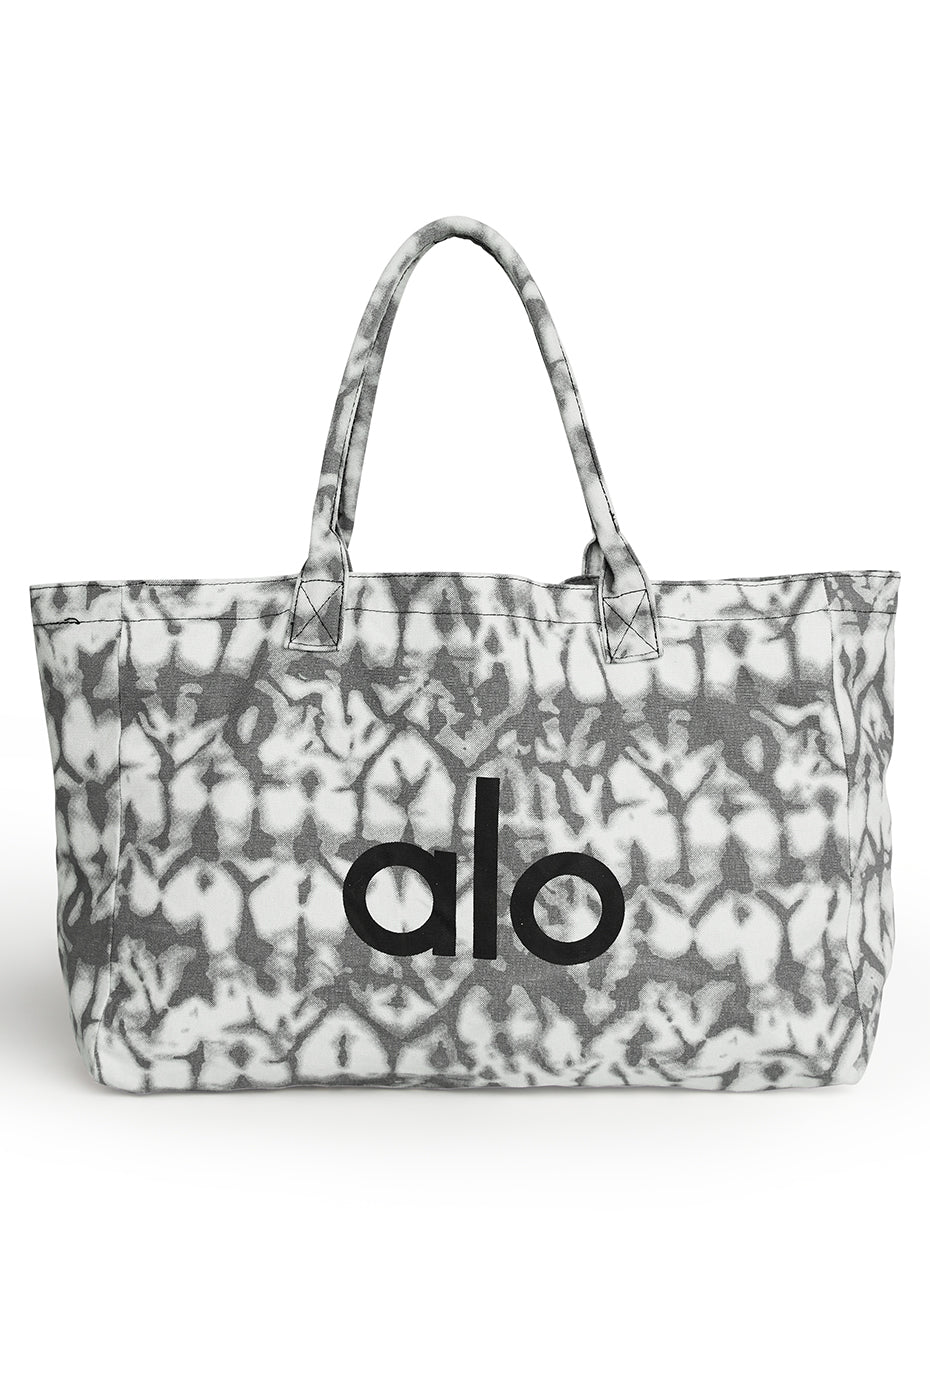 ALO Yoga, Bags, Alo Yoga Tote Bag Brand New With Tags